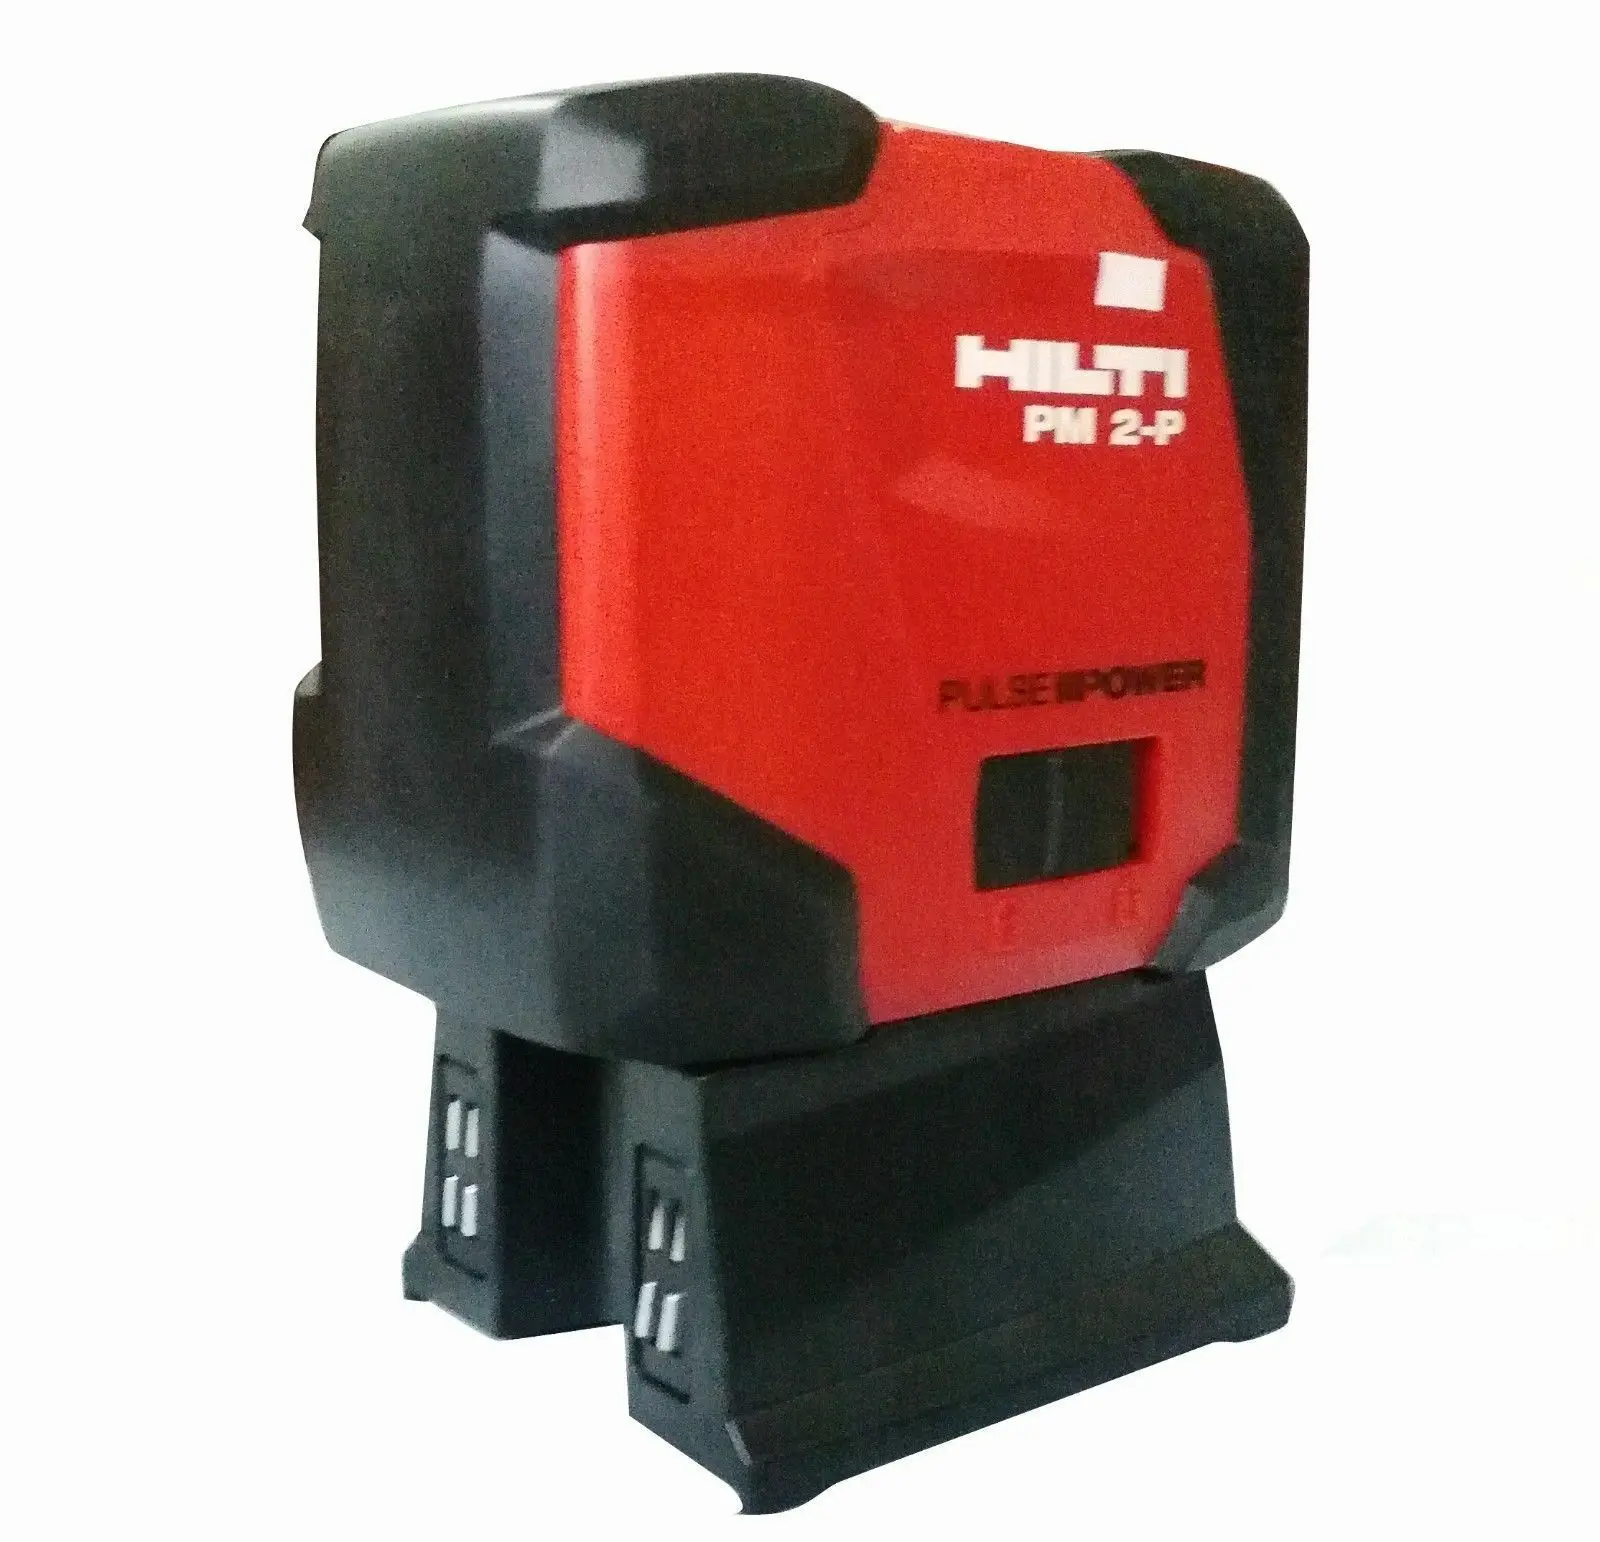 Hilti point | Лазер Пухлающий лазерный уровень PM 2-P Инструменты